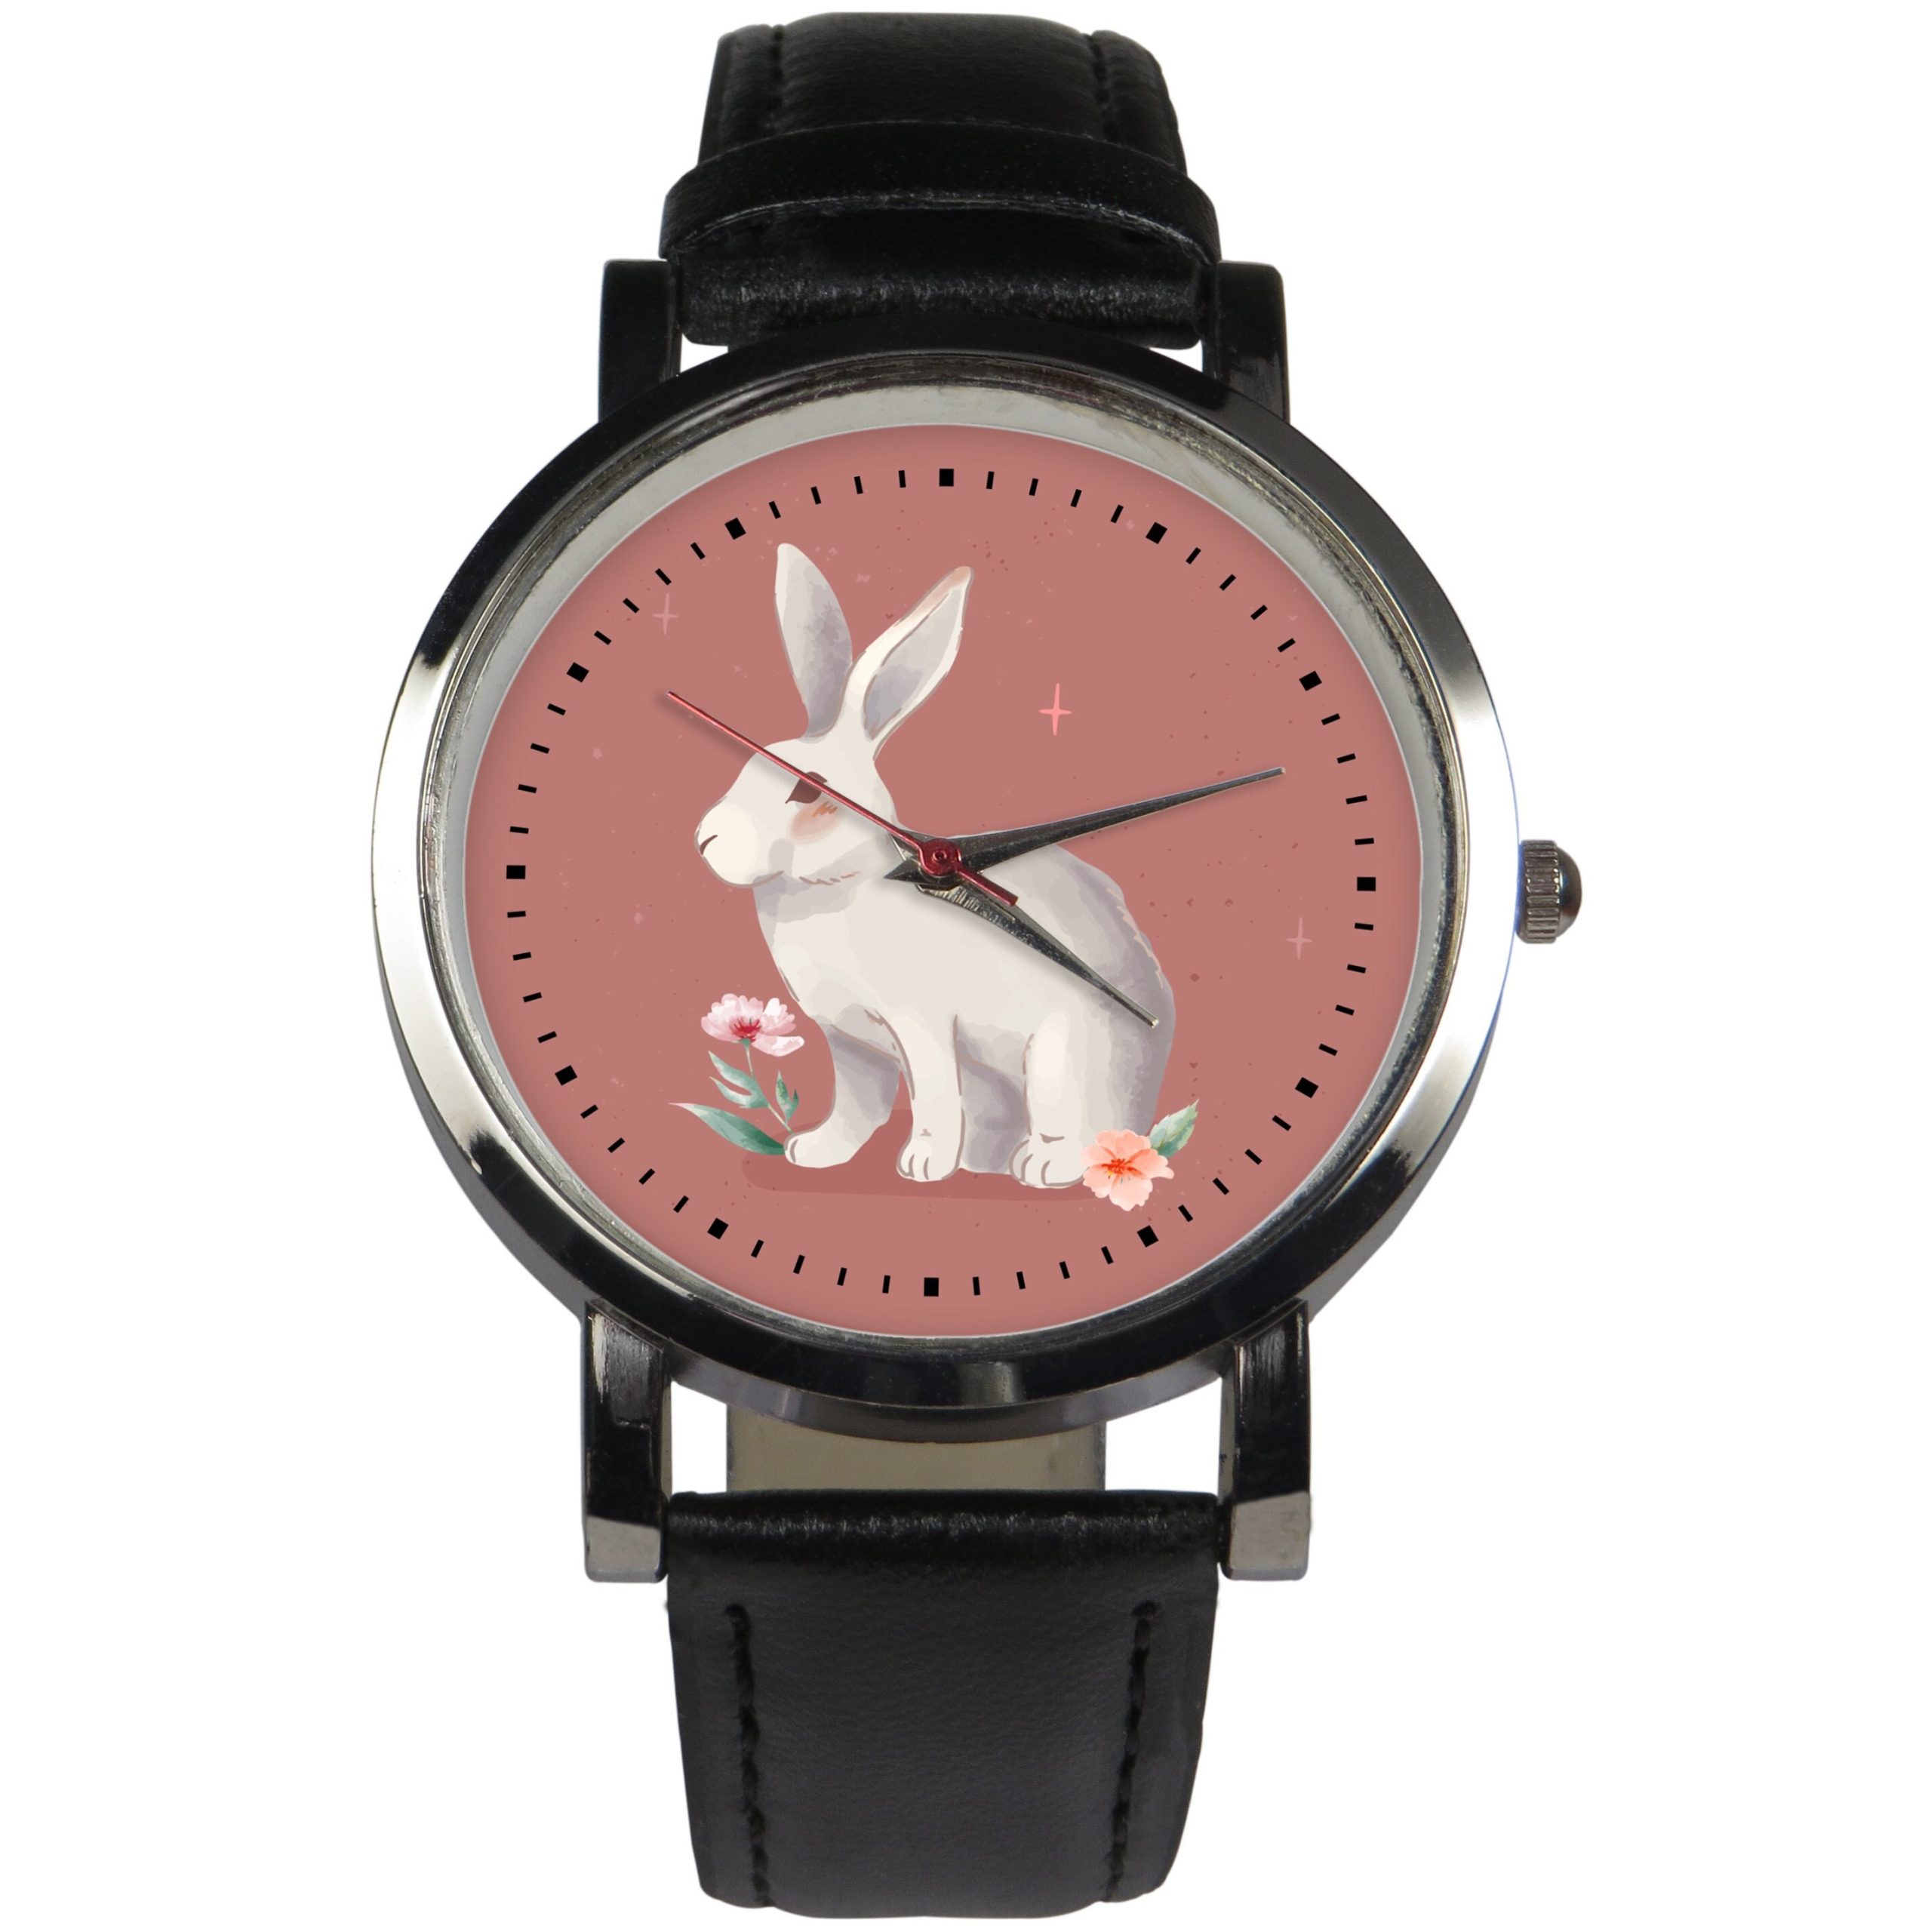 Super cute rabbit wristwatch design